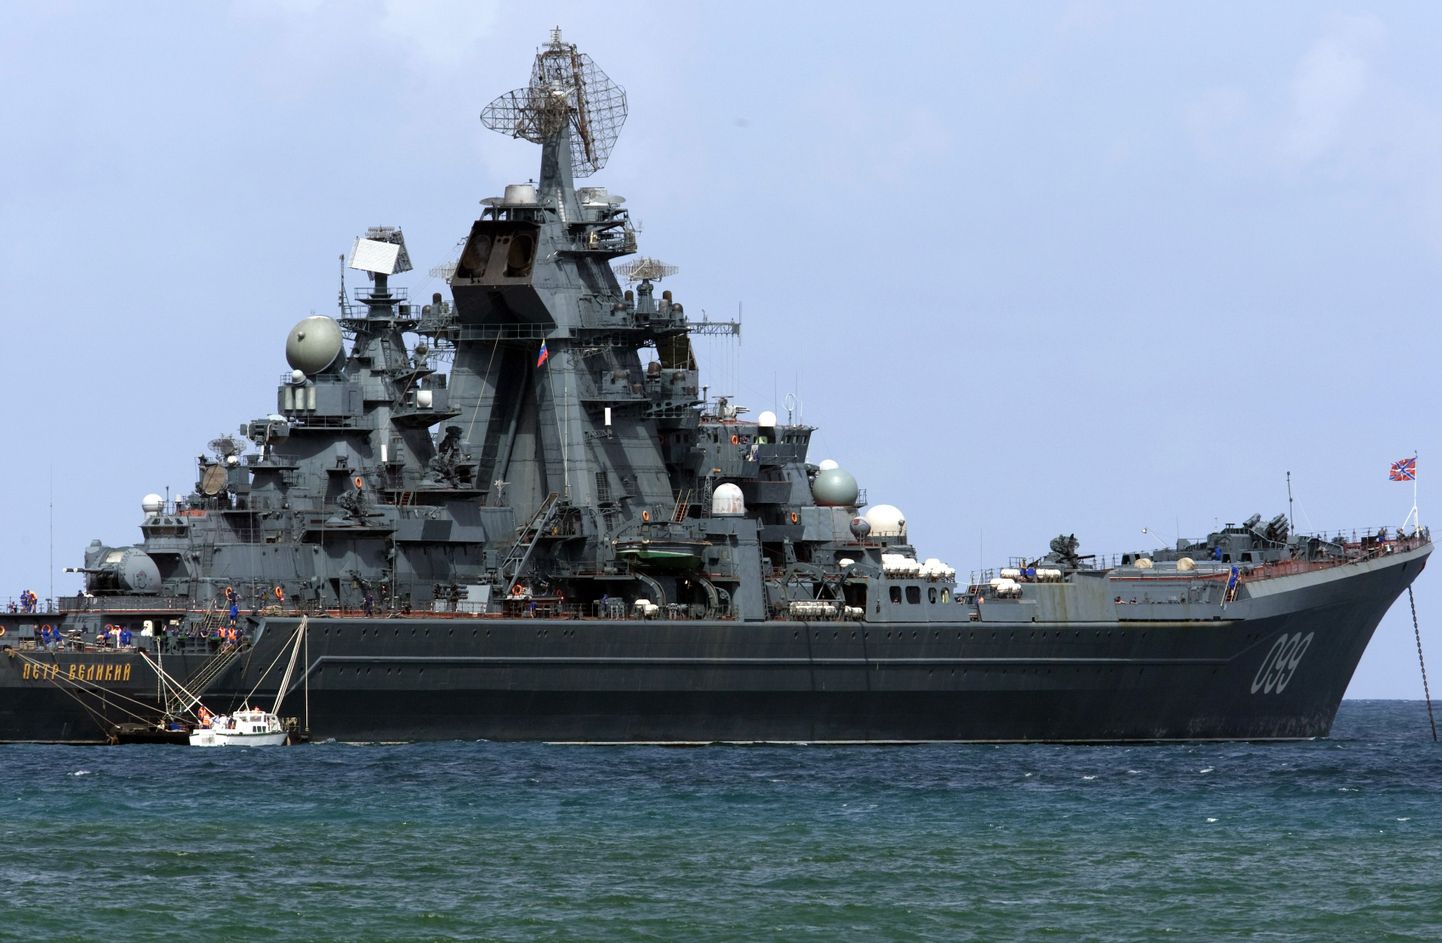 Venemaa põhjalaevastiku lipulaev tuumaristleja Pjotr Veliki (Peeter Suur)